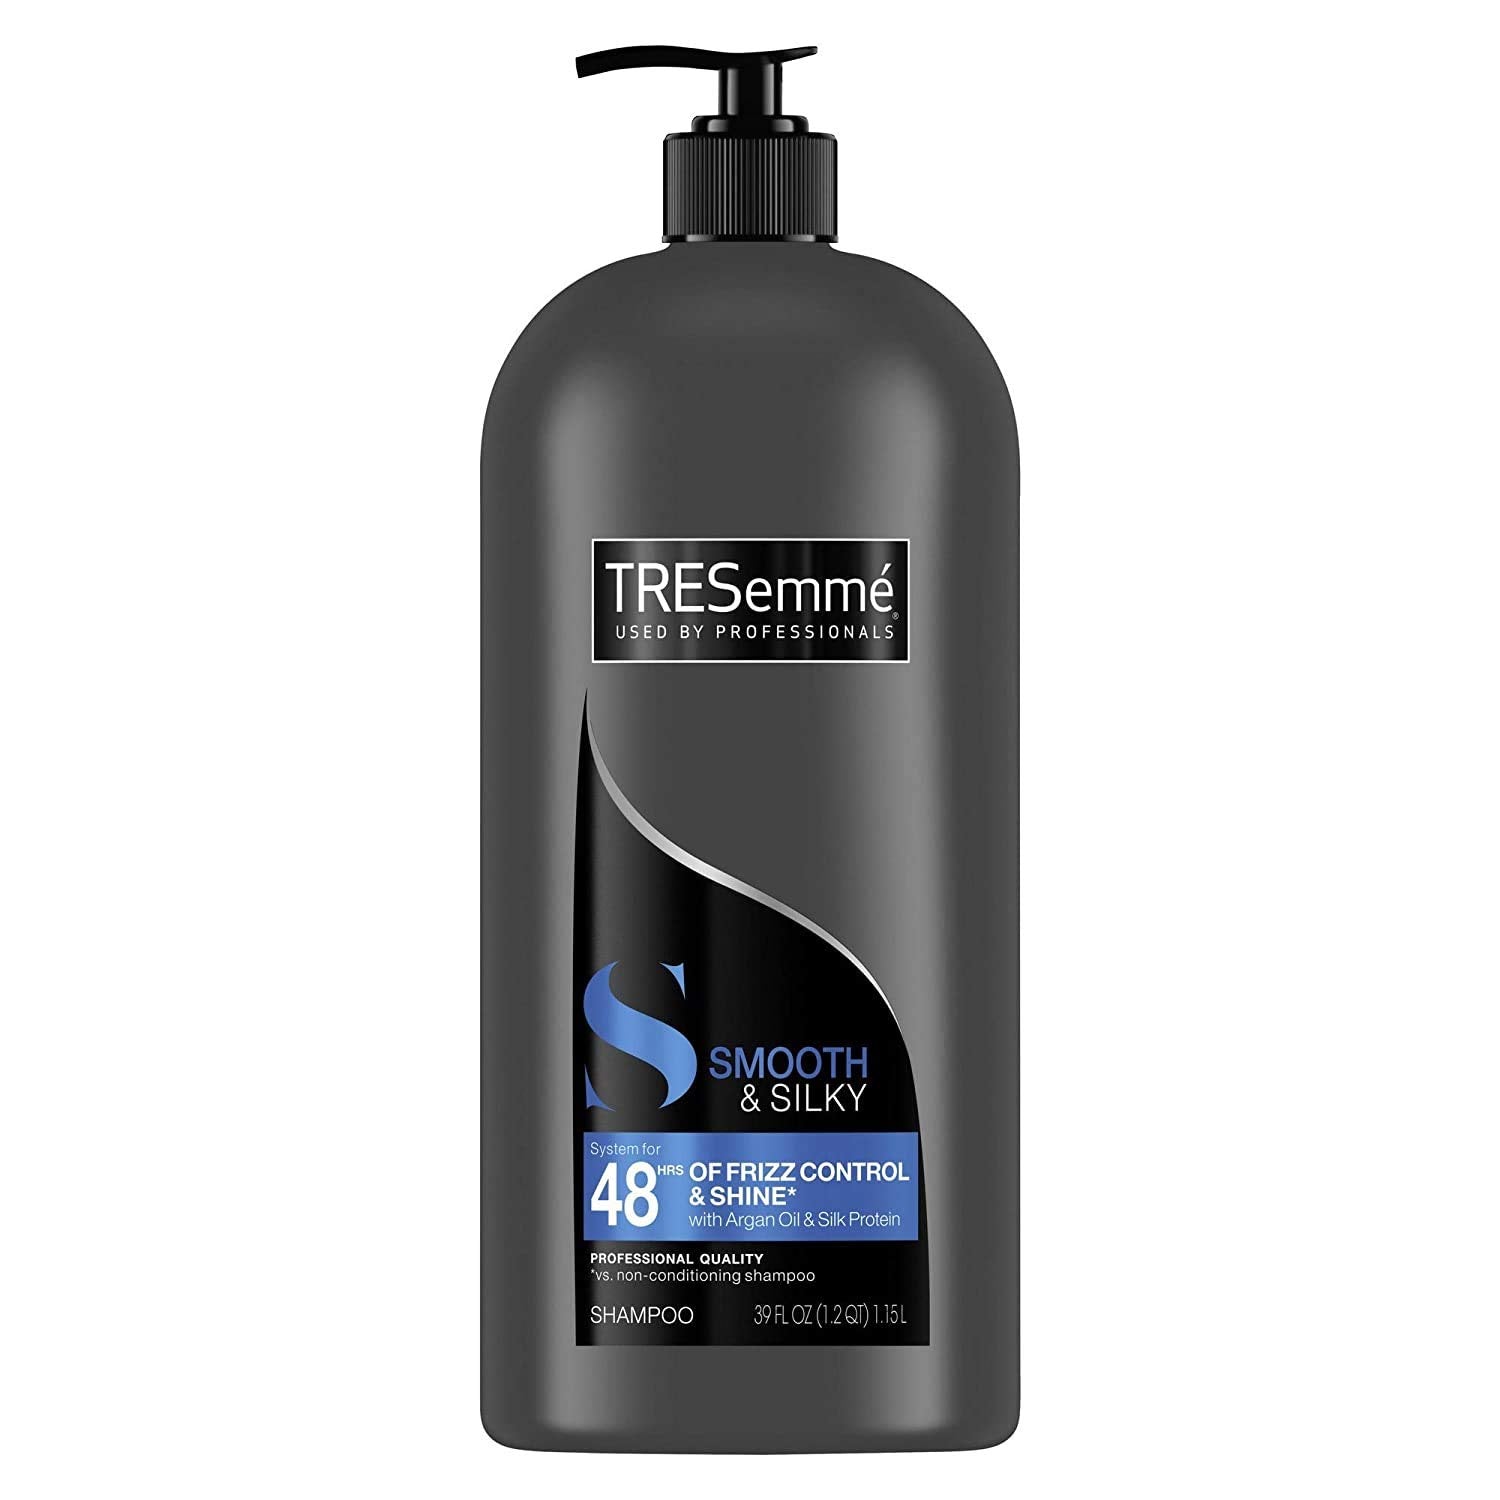 Tresemme Smooth & Silky Shampoo w/ pump 39oz